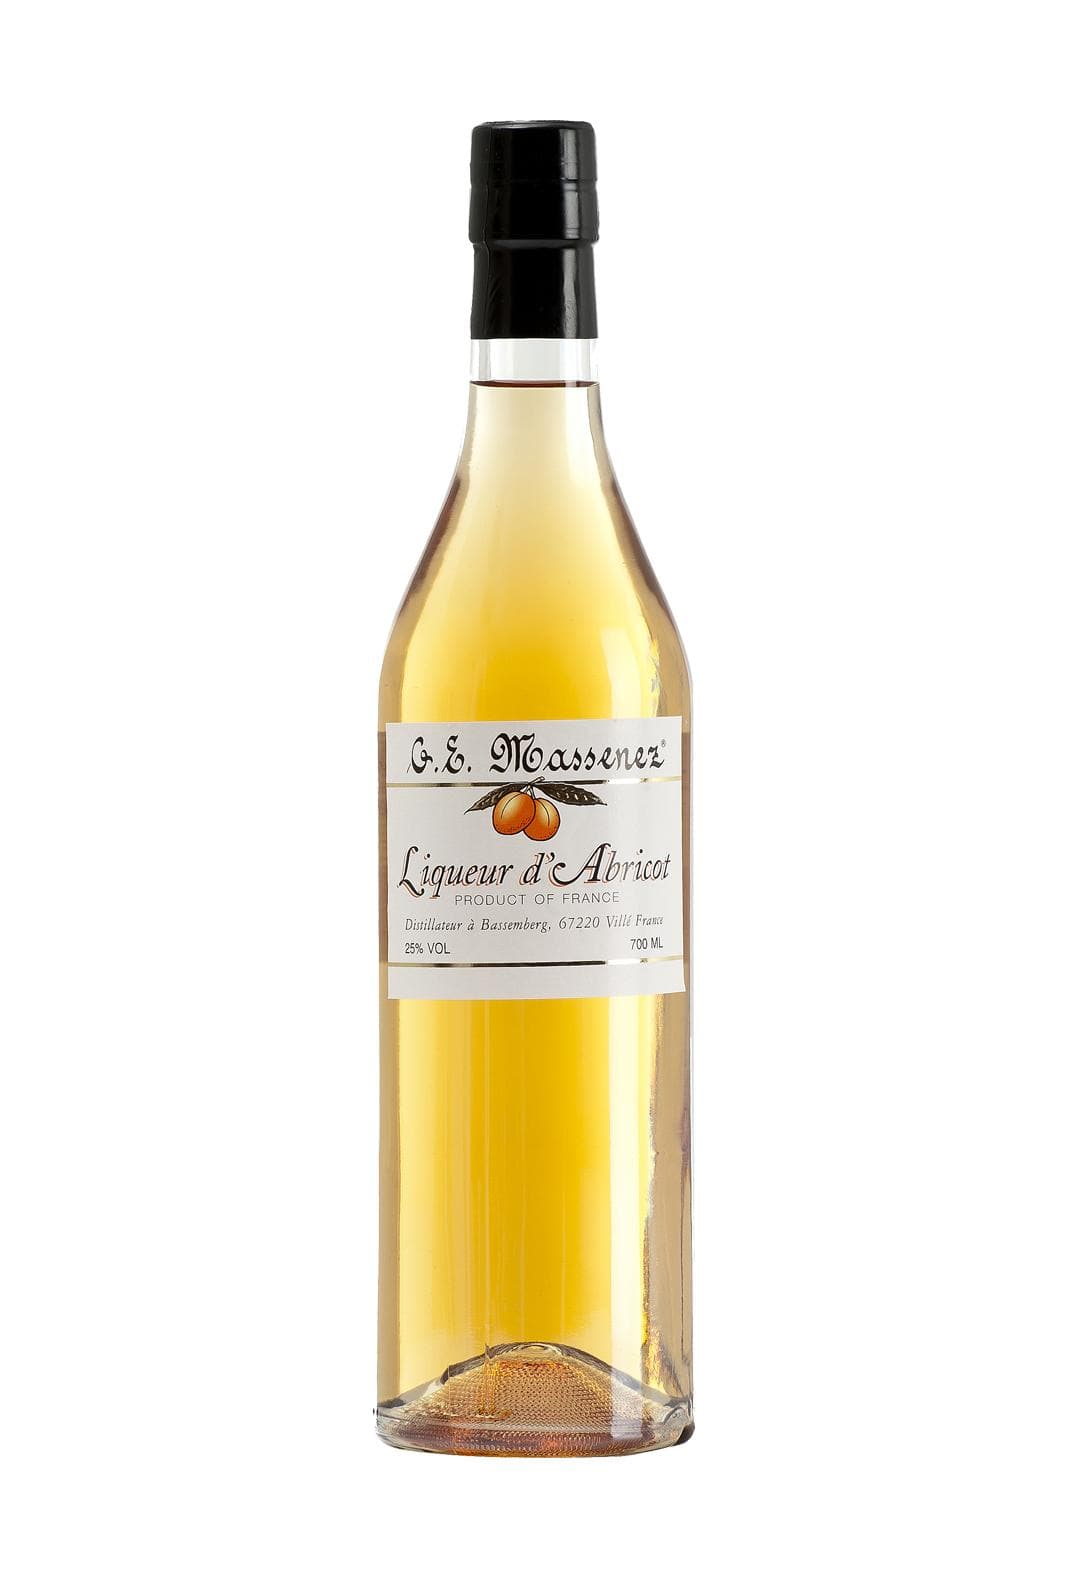 Massenez Liqueur de Abricot (Apricot) 25% 700ml | Liqueurs | Shop online at Spirits of France